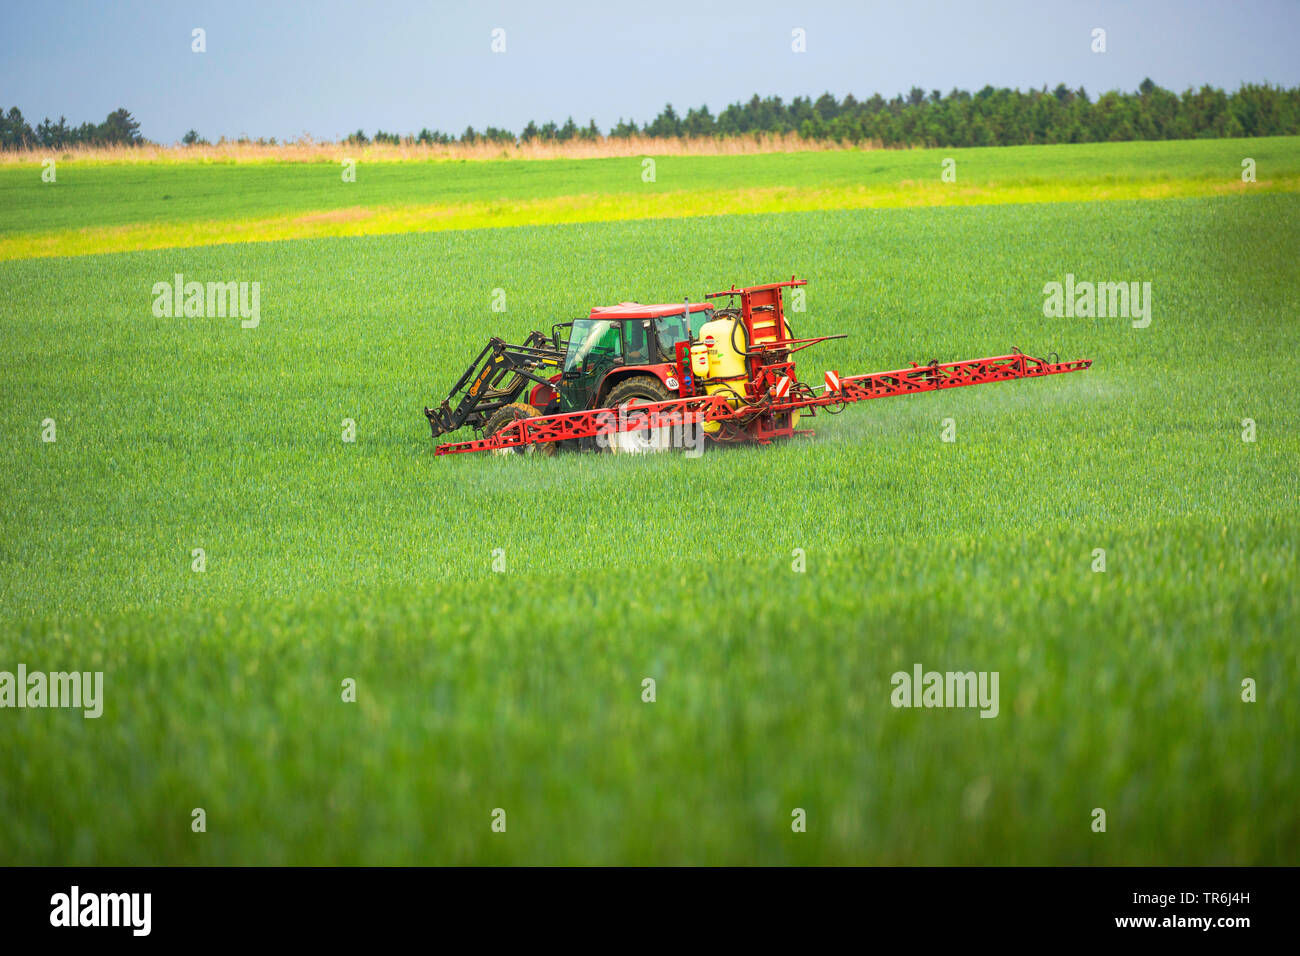 Le blé tendre, cultivé du blé (Triticum aestivum), l'application de pesticides sur le tracteur d'un champ de blé, l'Allemagne, la Bavière Banque D'Images